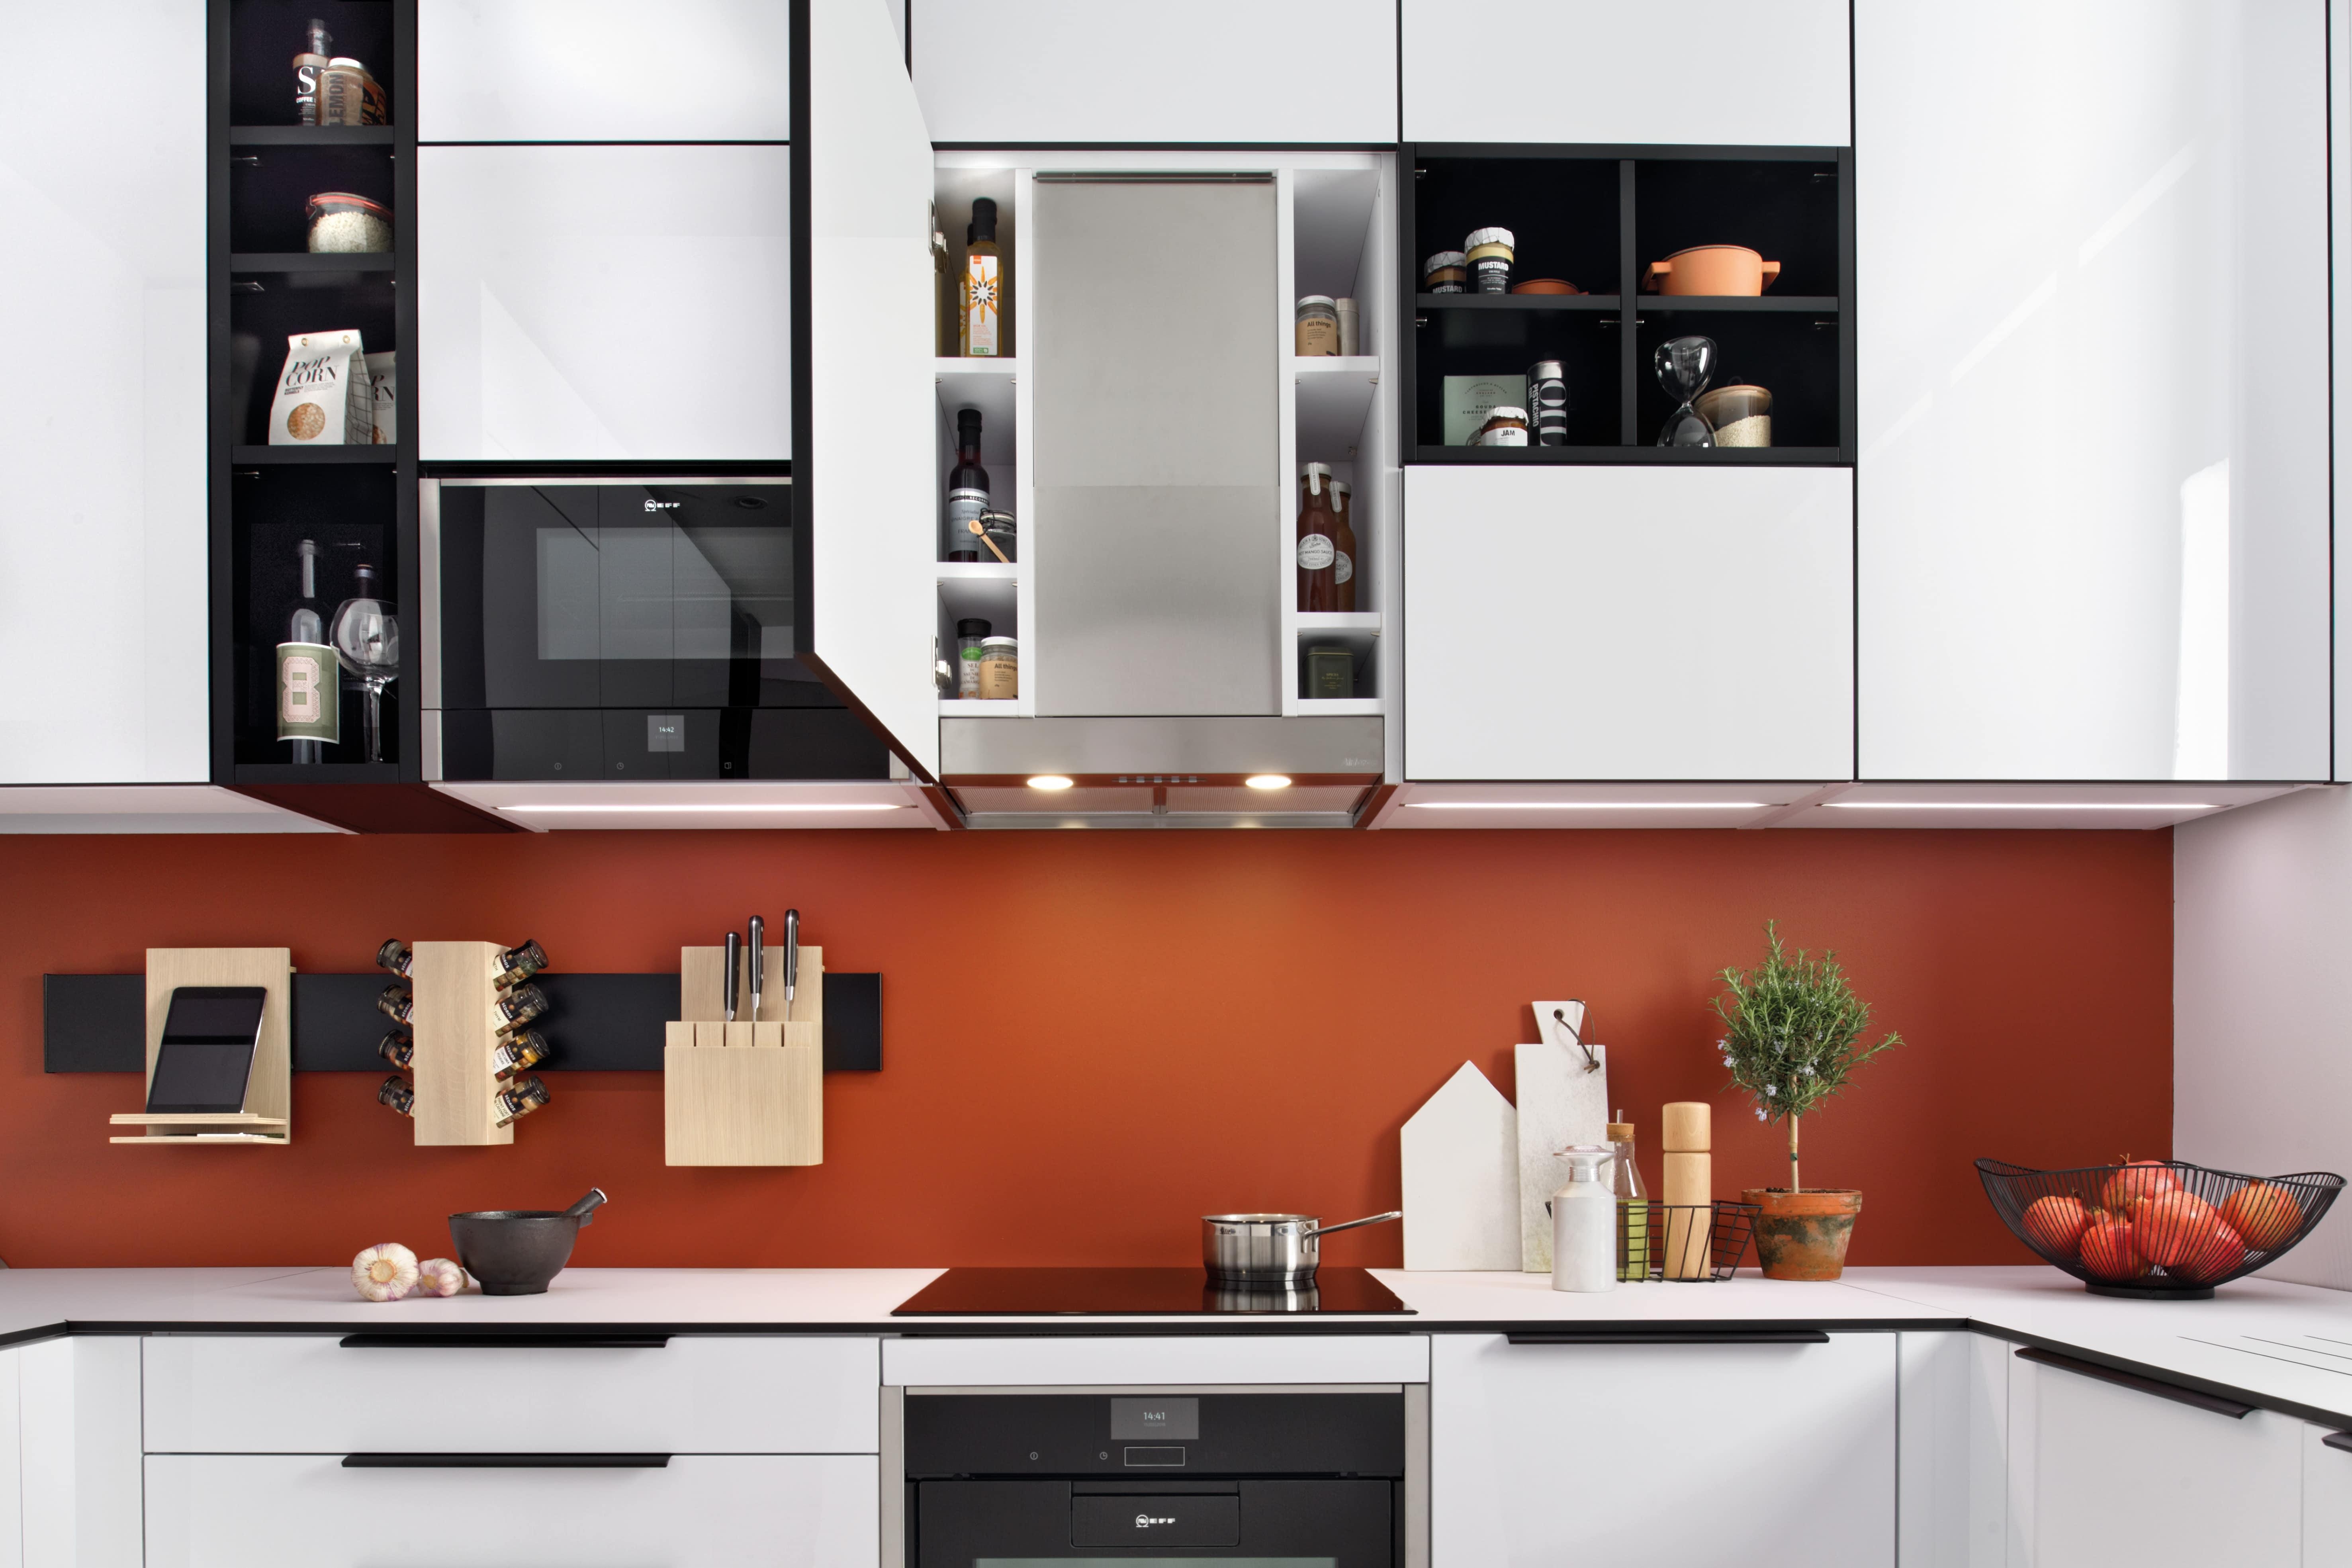 Wie man der Küche zusätzlichen Stauraum abtrotzen kann, zeigt SCHMIDT mit einem Schrank rund um die Dunstabzugshaube.